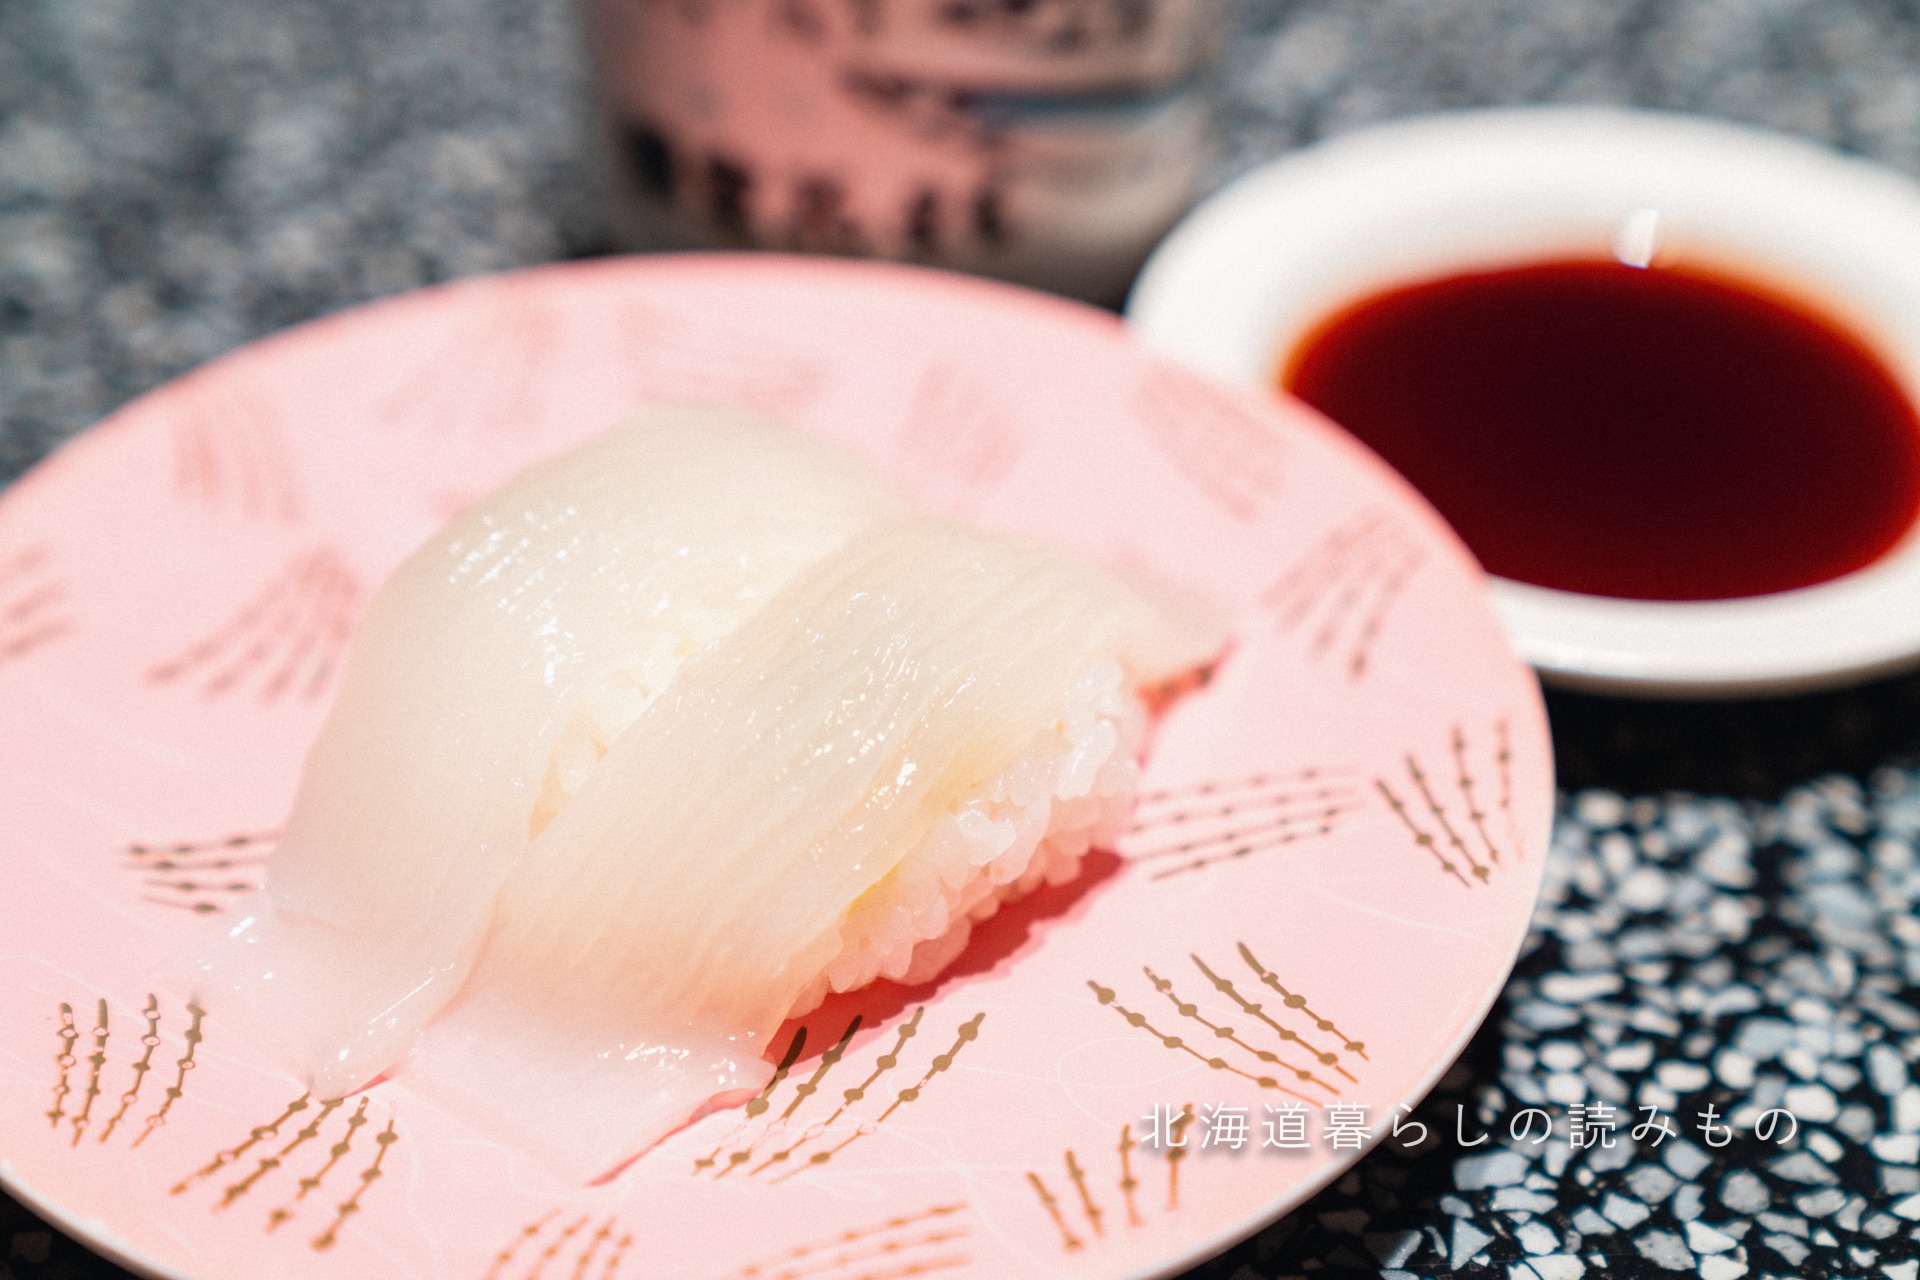 迴轉壽司根室花丸的菜單上的「Squid」